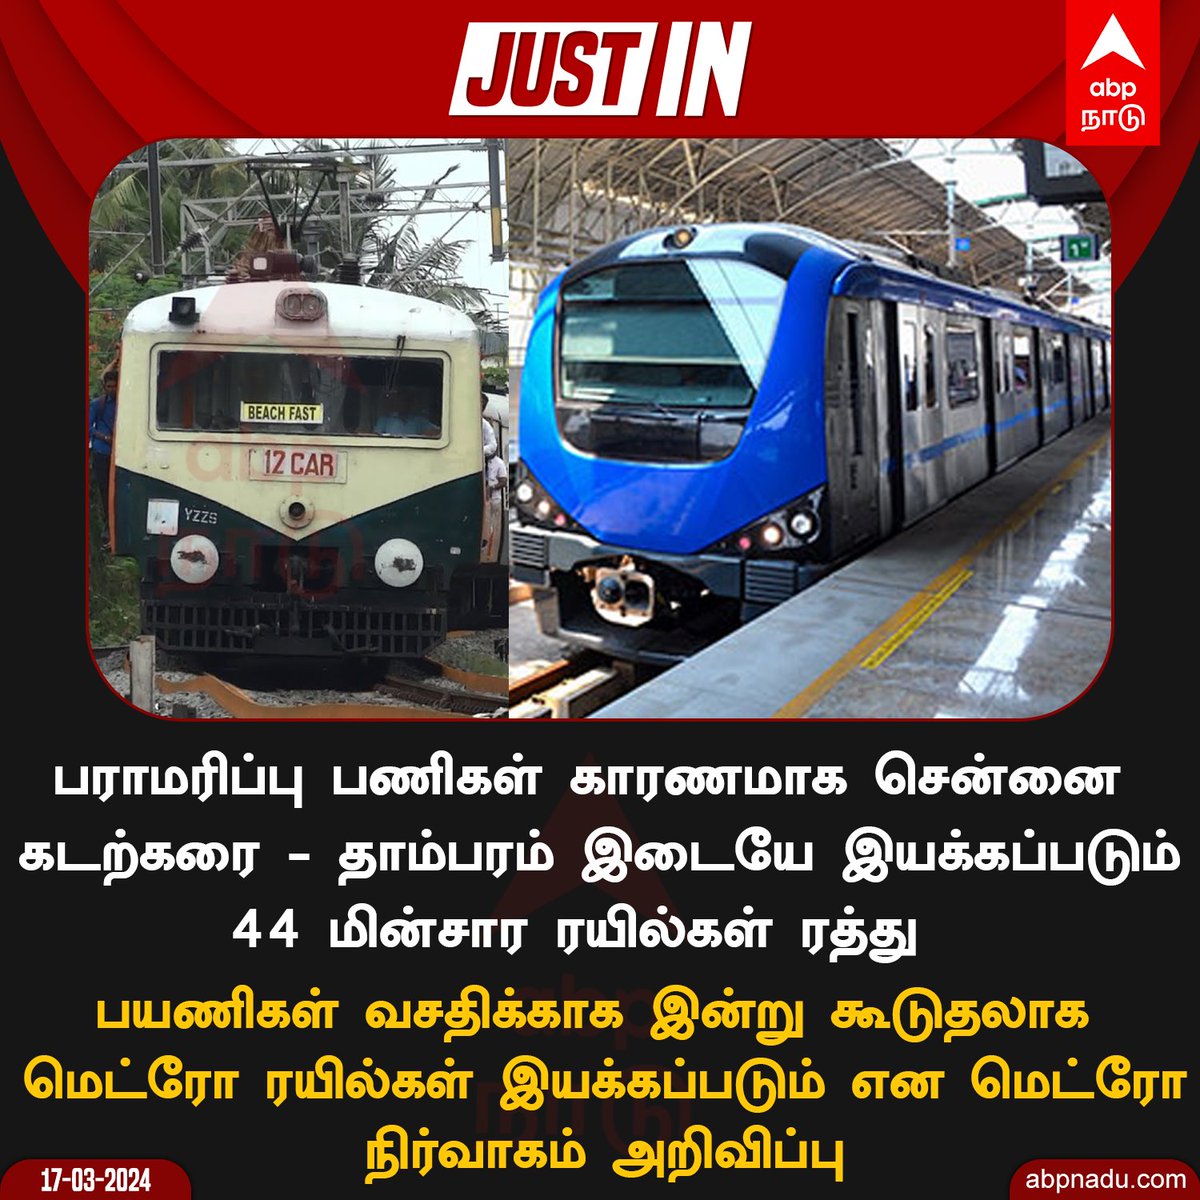 44 மின்சார ரயில்கள் ரத்து!

abpnadu.com | #ChennaiMetroRail #ChennaiBeach #MetroRail